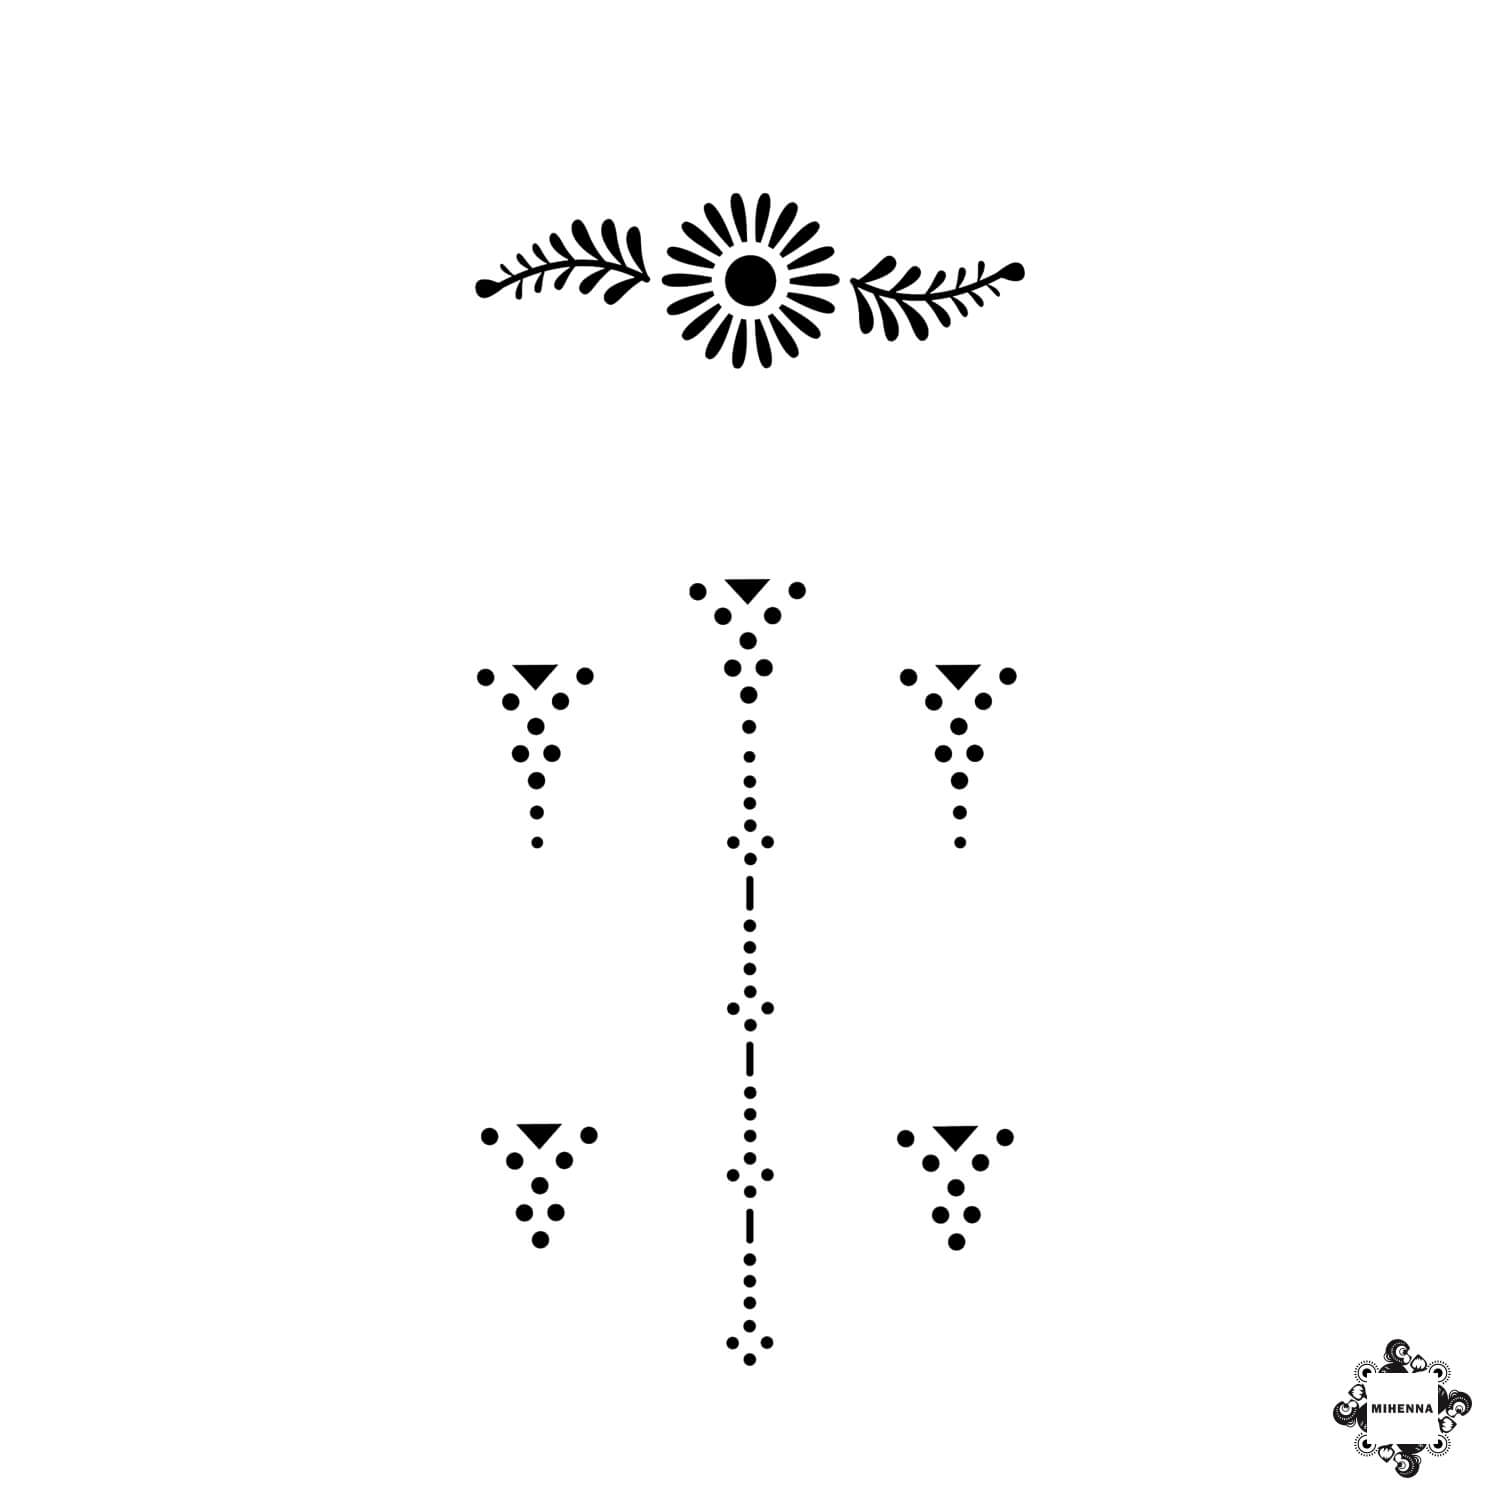 Aria - ring henna design sticker stencil